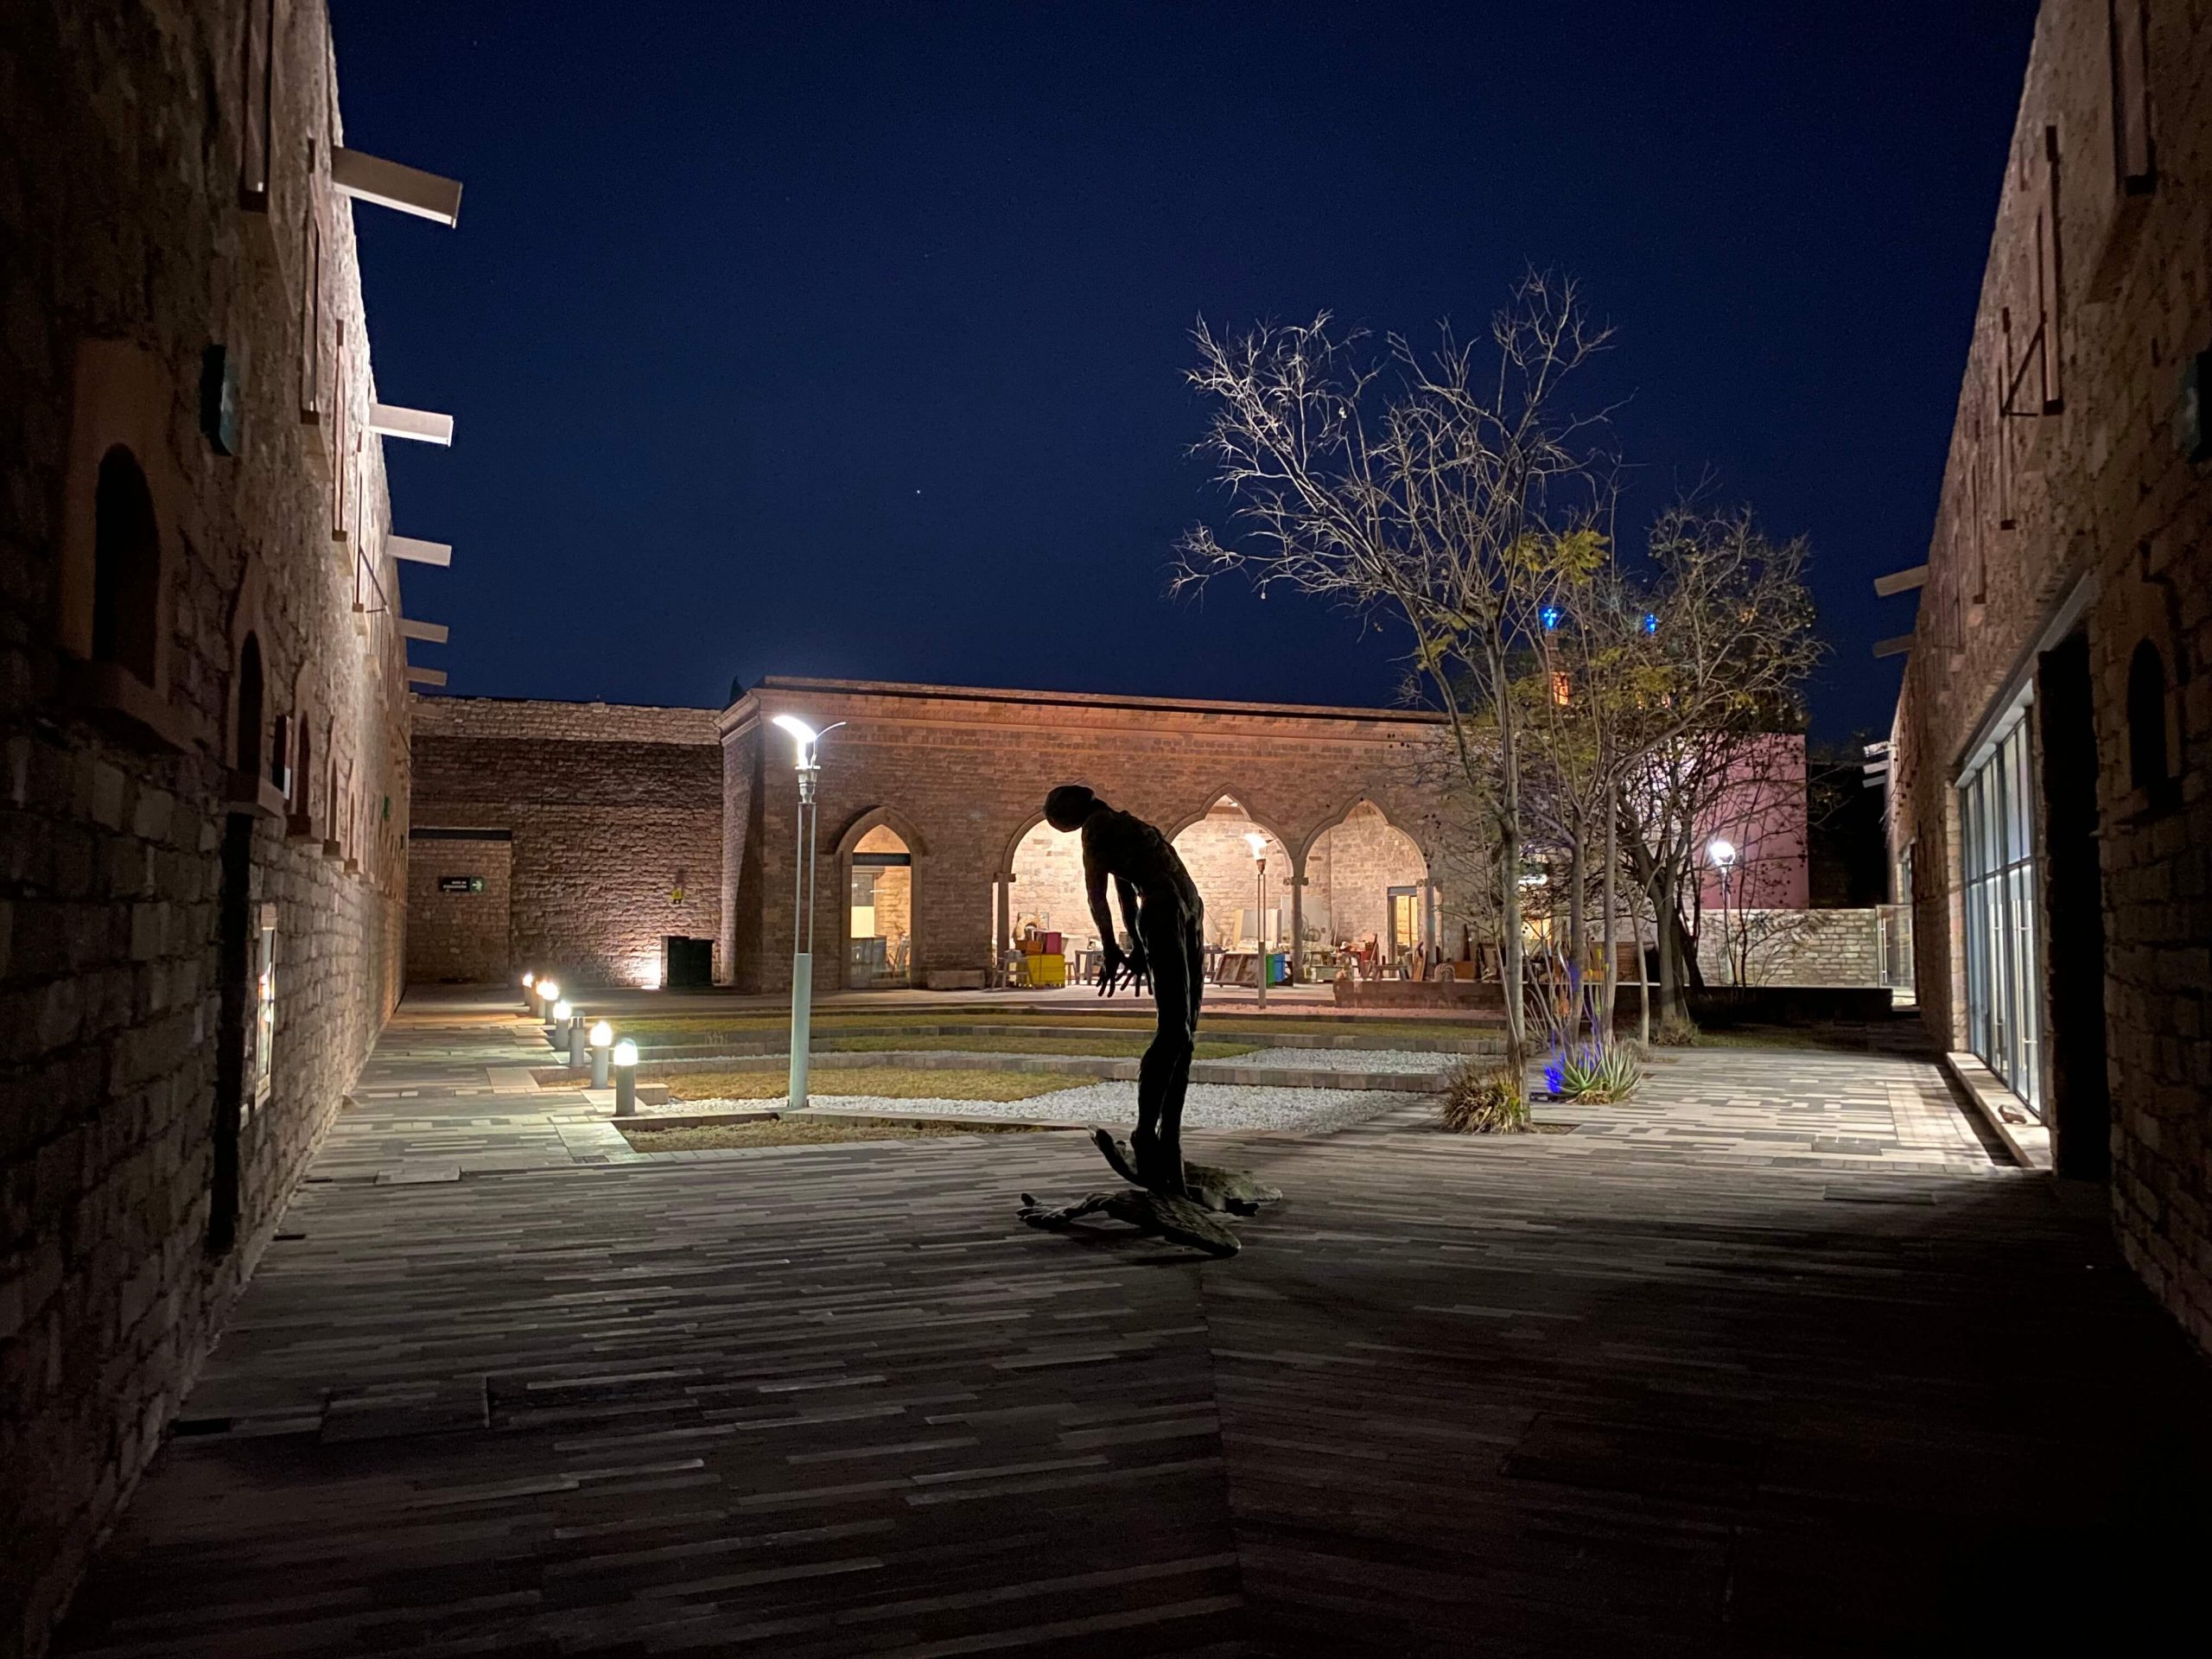 El Centro de las Artes de San Luis Potosí, invita al público en general a los recorridos nocturnos que se llevan a cabo todos los viernes